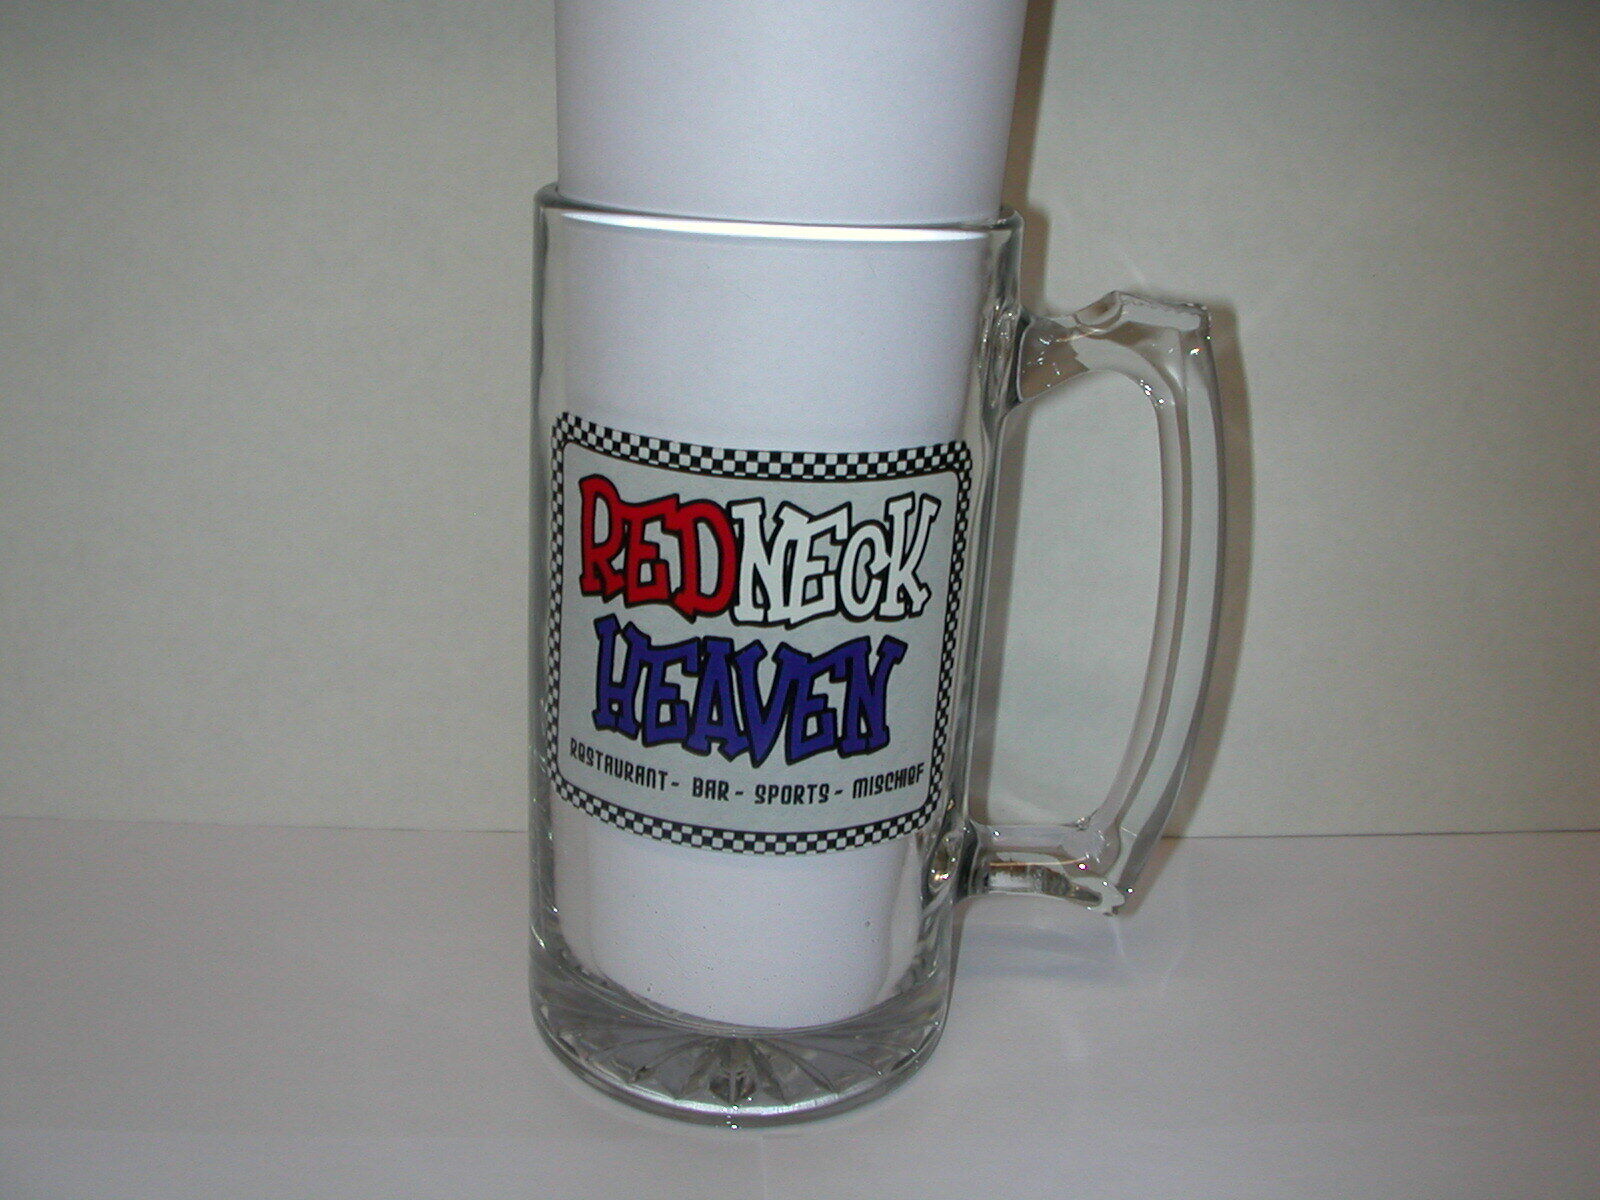 REDNECK HEAVEN Large Glass Beer Mug~TEXAS Bar Restaurant Sports Mischief~Bikers